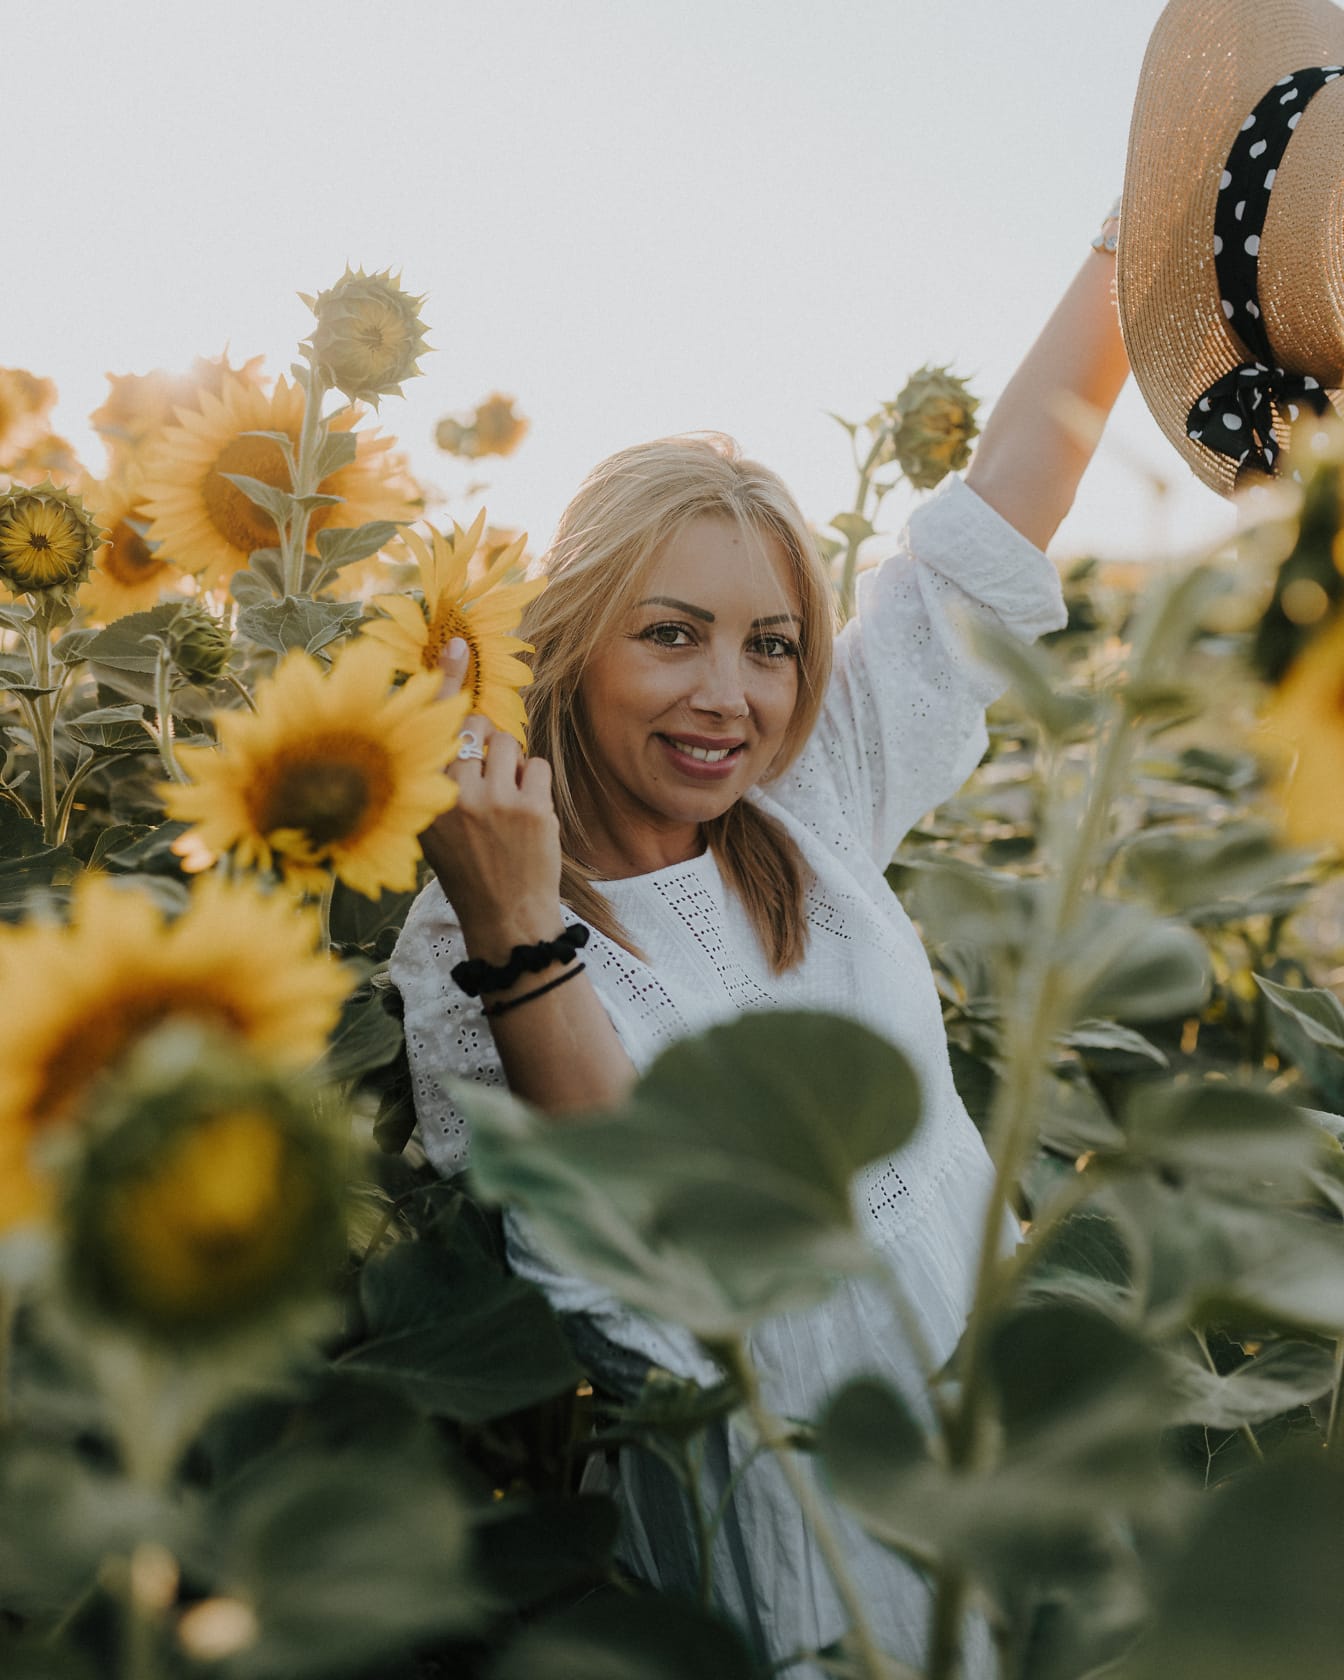 Potret seorang cowgirl cantik yang tersenyum memukau memegang topi jerami di ladang bunga matahari